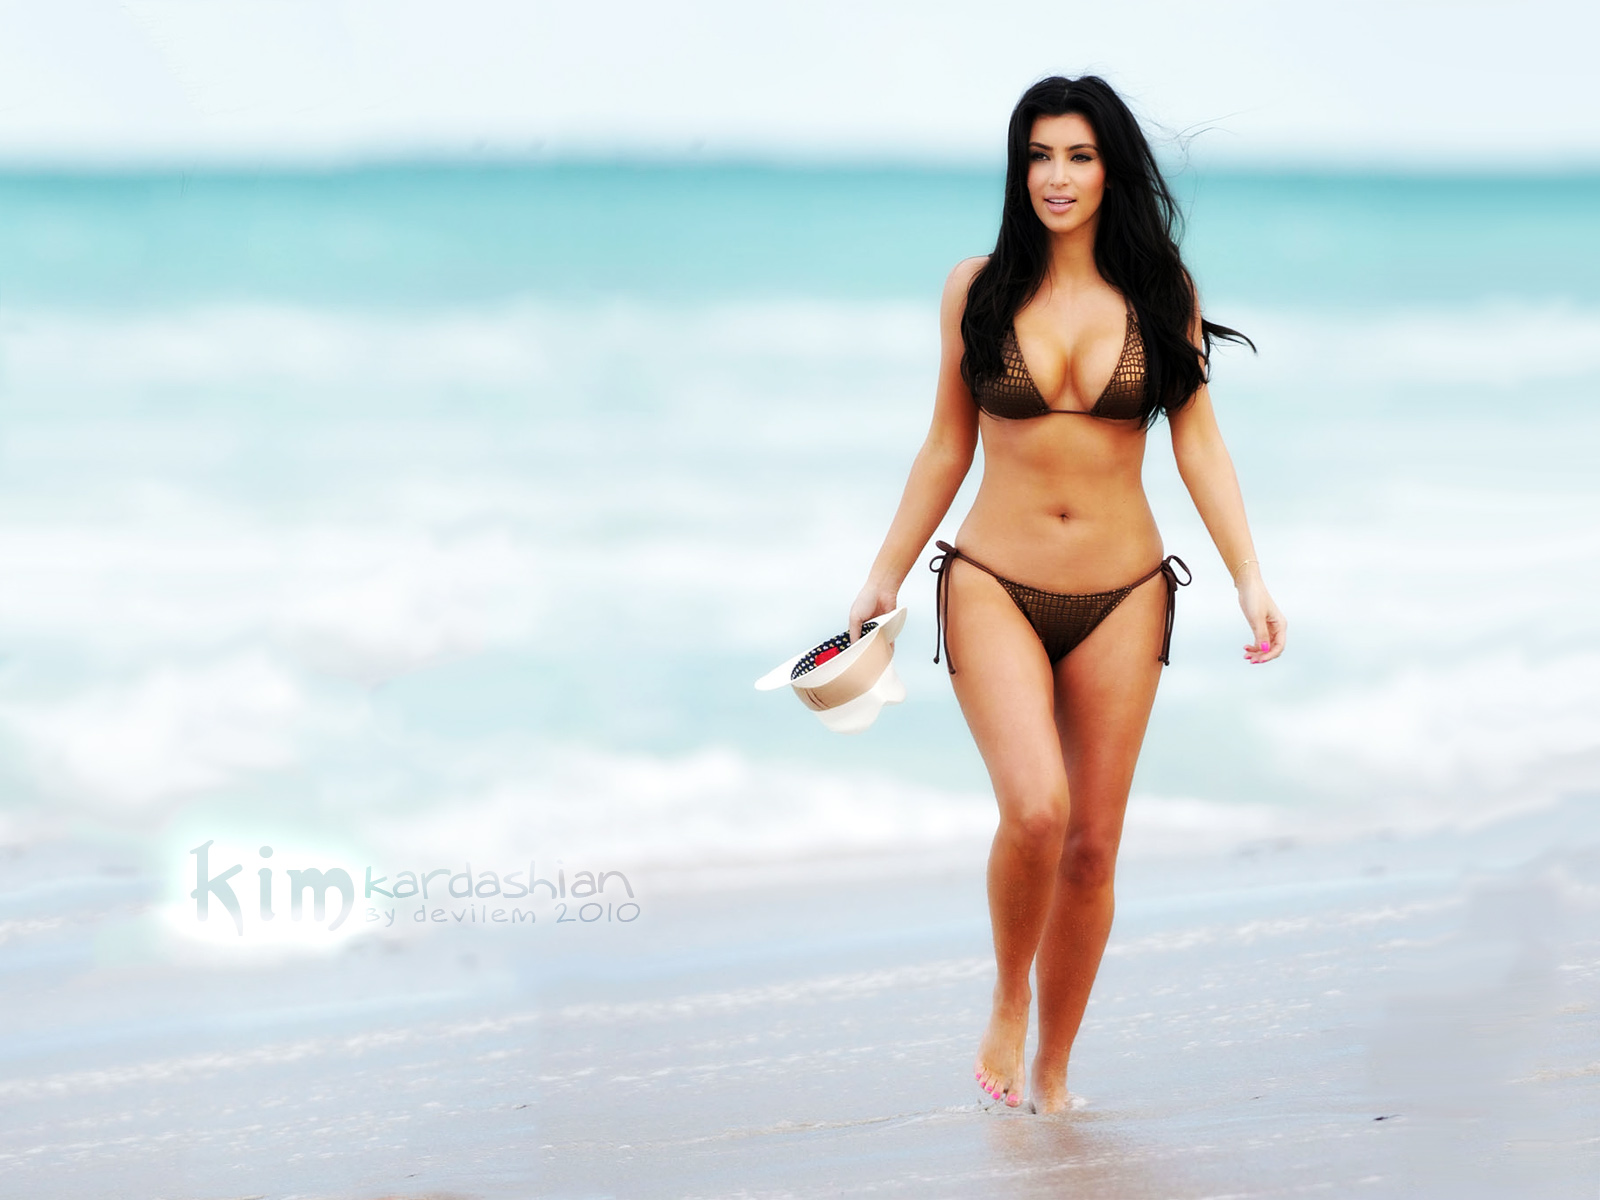 http://2.bp.blogspot.com/-nlk9R-mM2Lo/TyvcEROLWeI/AAAAAAAADAk/CRhbn8-Cwio/s1600/Kim-Kardashian-Hot-Wallpapers-4.jpg